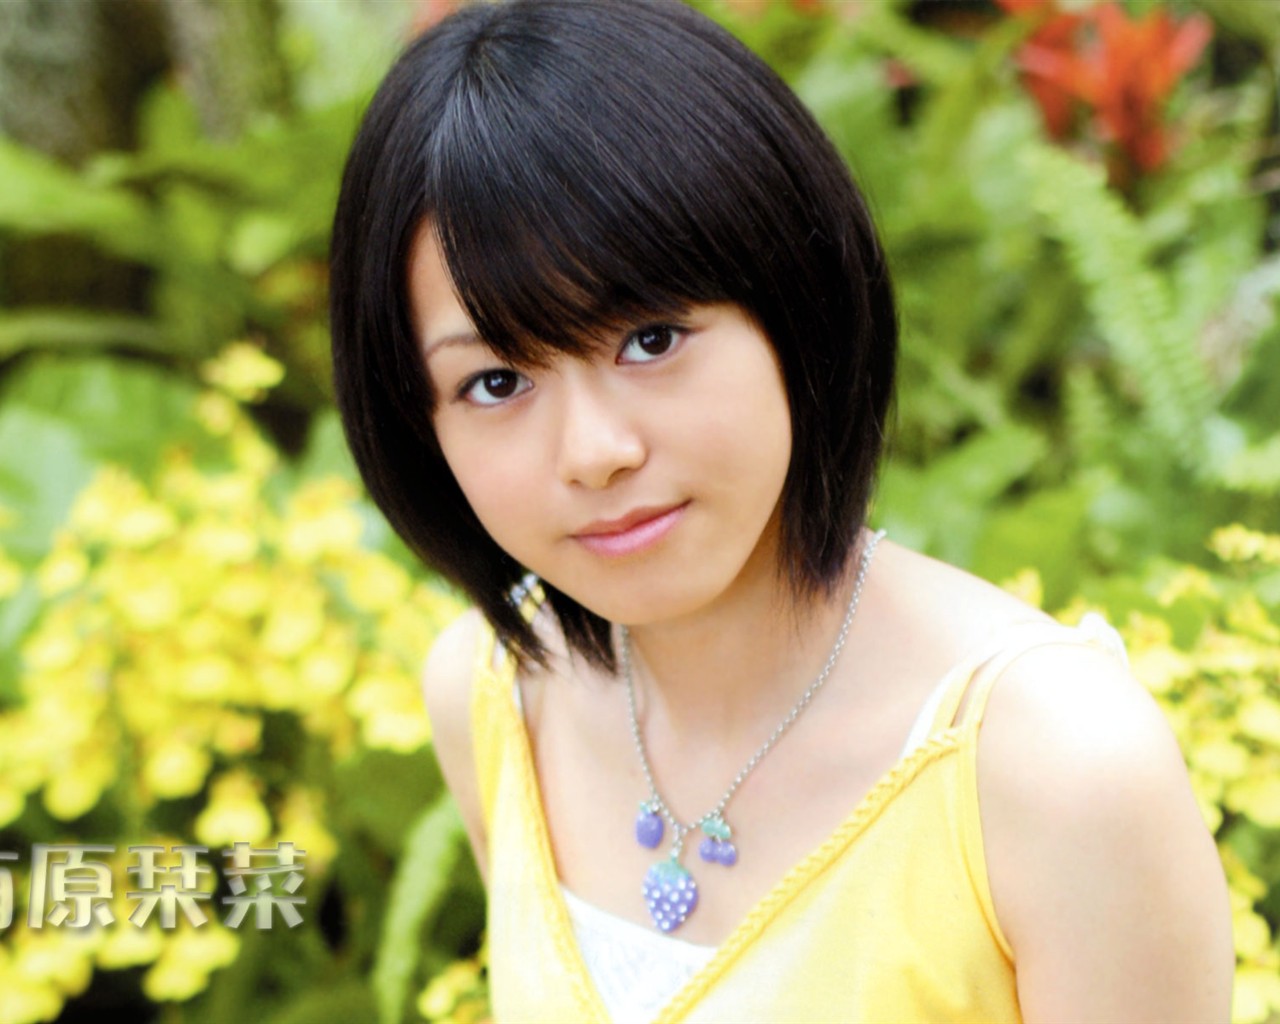 Cute belleza japonesa portafolio de fotos #9 - 1280x1024